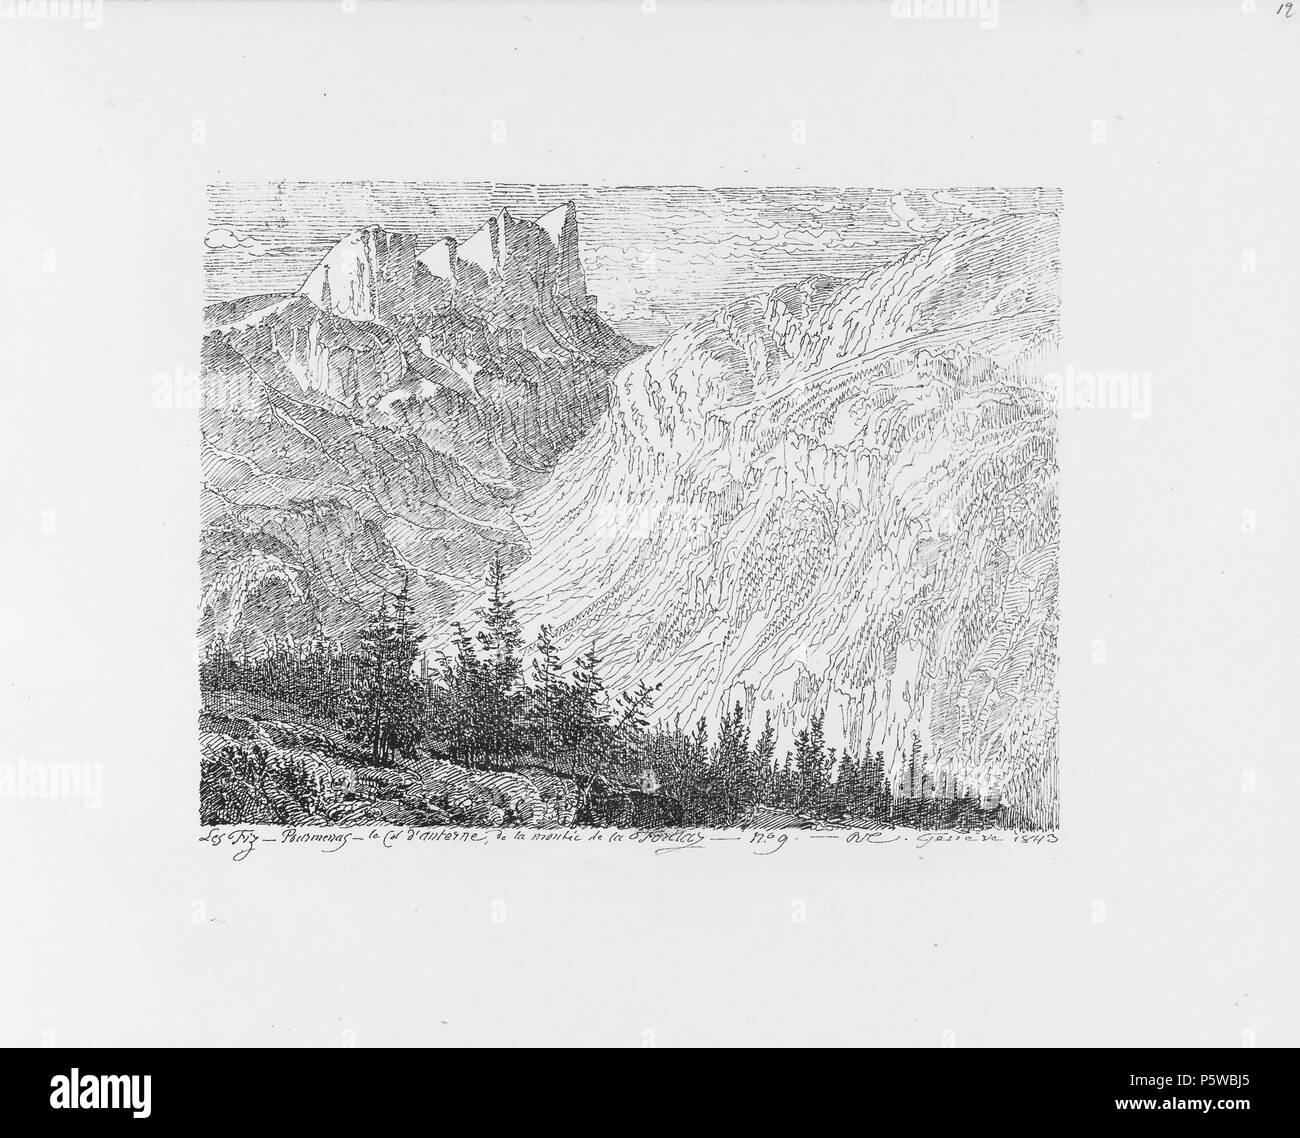 322 CH-NB-Voyage autour du Mont-Blanc dans les vallées d'Hérens de Zermatt et au Grimsel 1843-nbdig-19161-011 Stock Photo